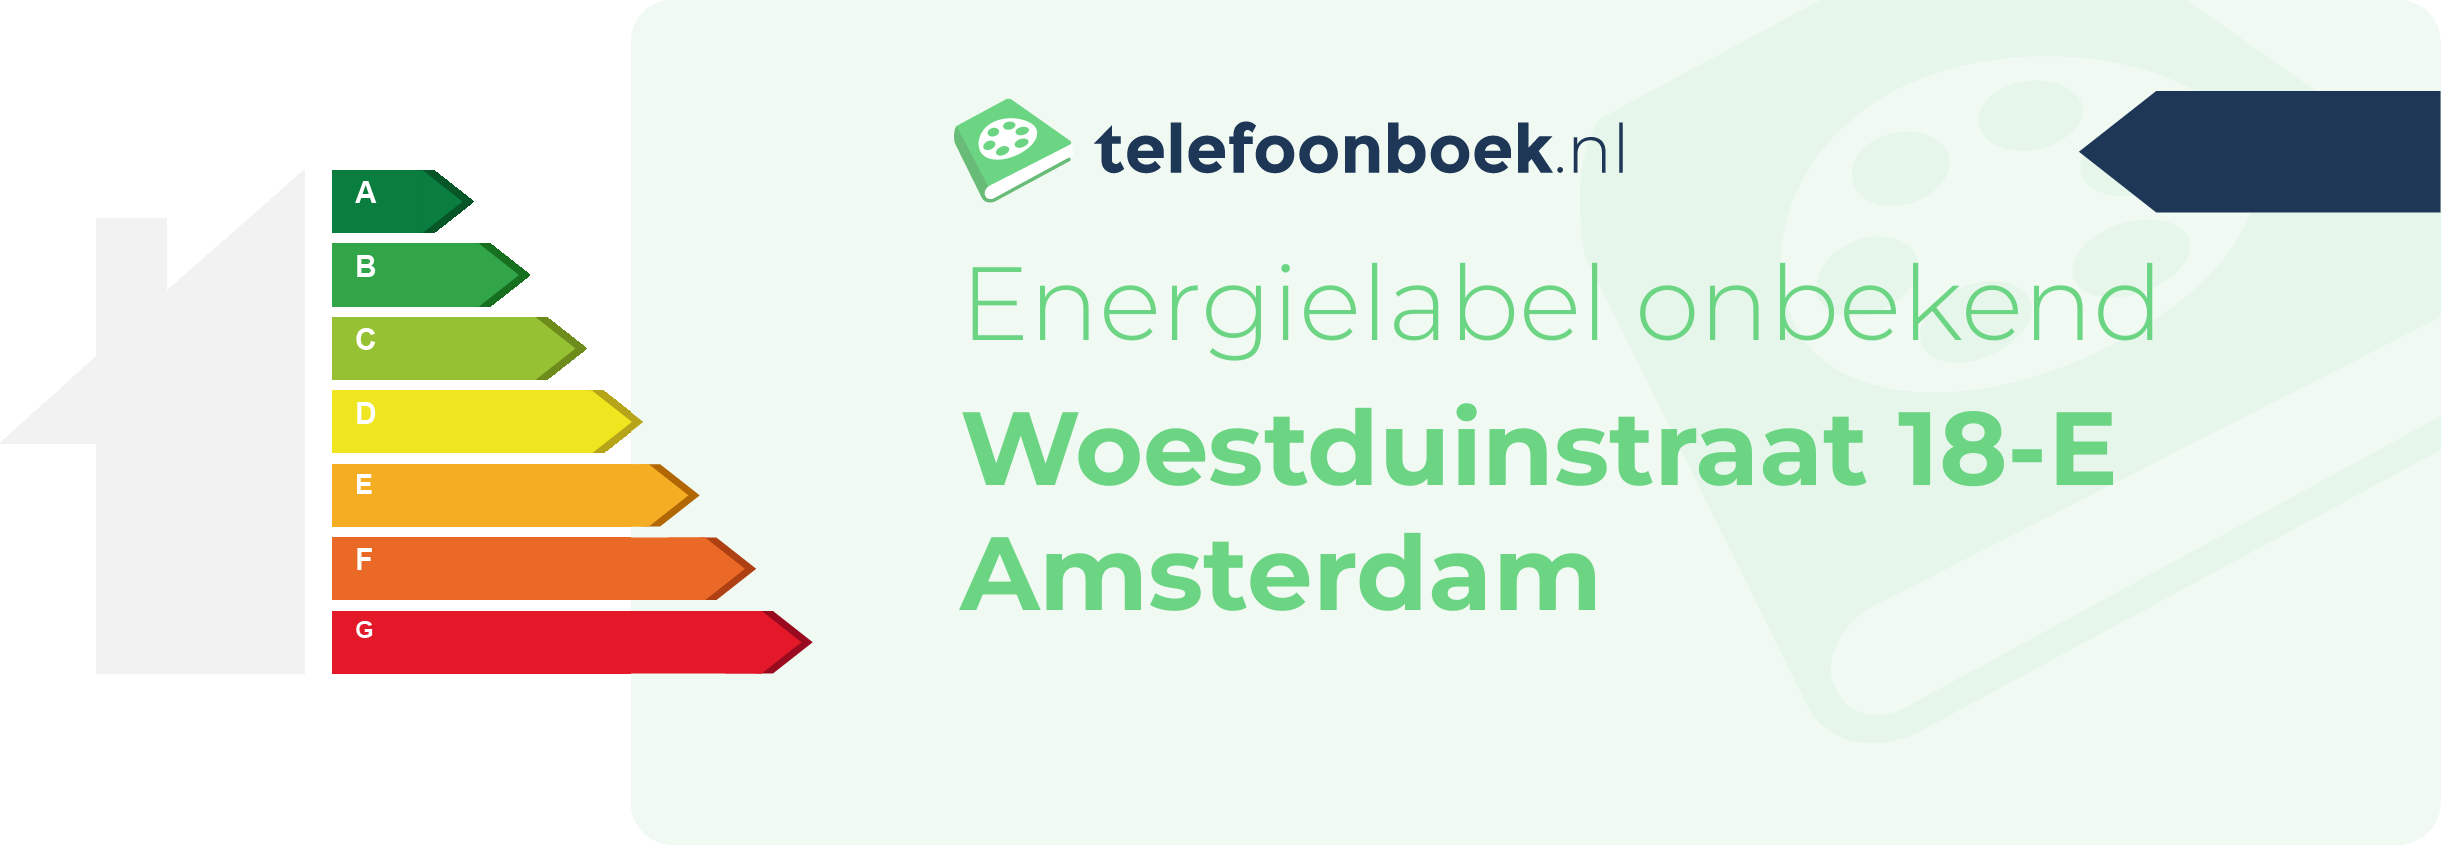 Energielabel Woestduinstraat 18-E Amsterdam